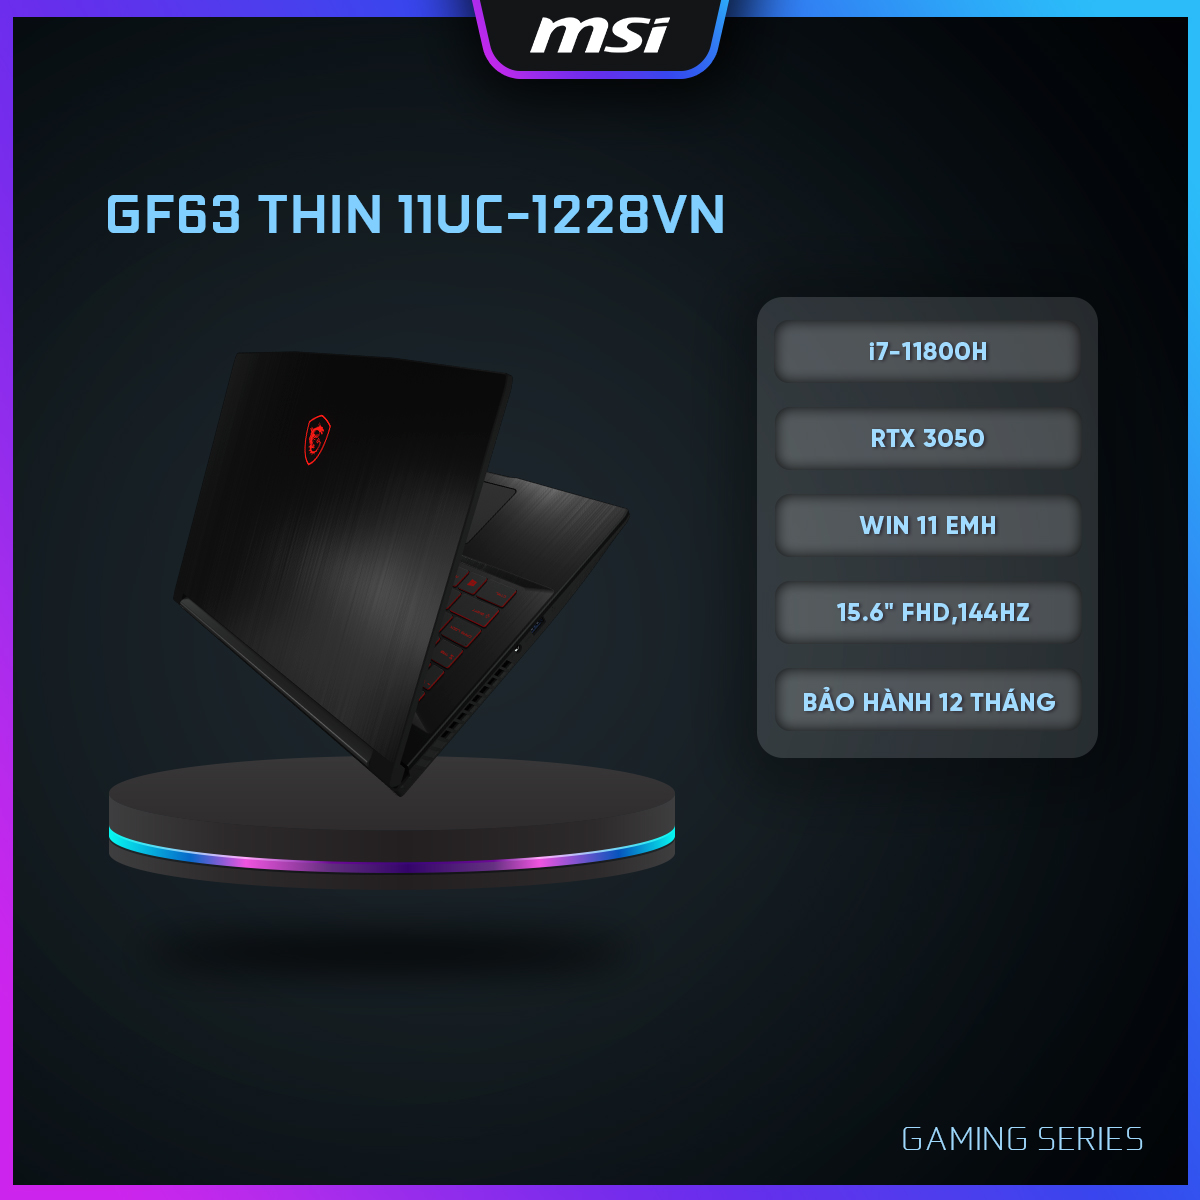 MSI Laptop GF63 Thin 11UC-1228VN |CPU Intel i7-11800H|Card GTX 3050|Ram 8GB|Bộ nhớ 512GB SSD|Màn hình 15.6" FHD,144Hz [Hàng chính hãng]